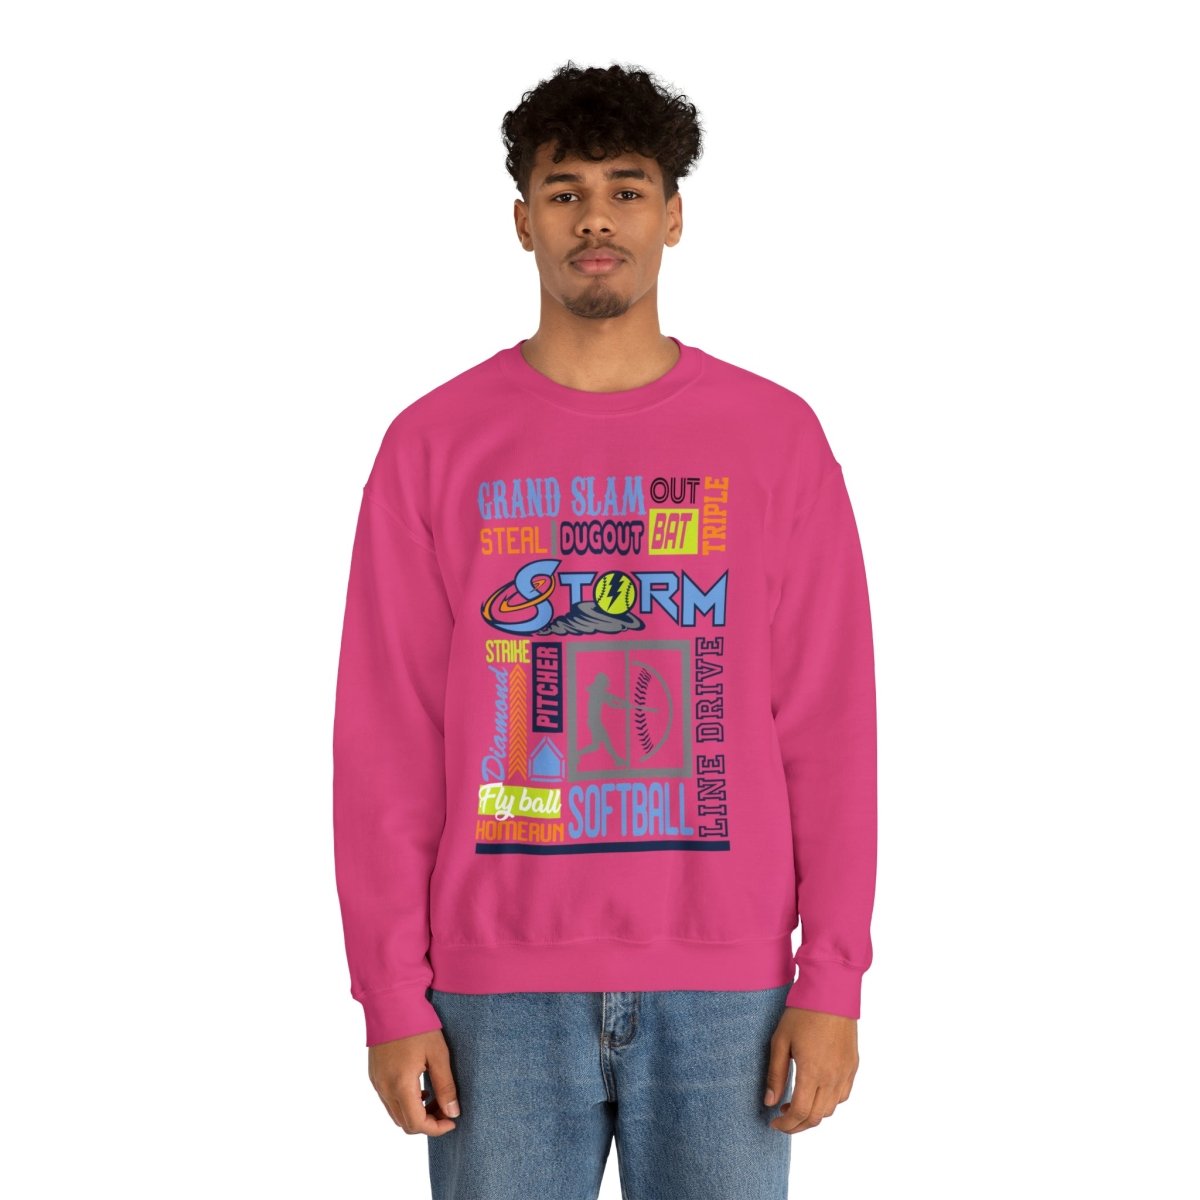 Storm Word Art Cotton Sweatshirt